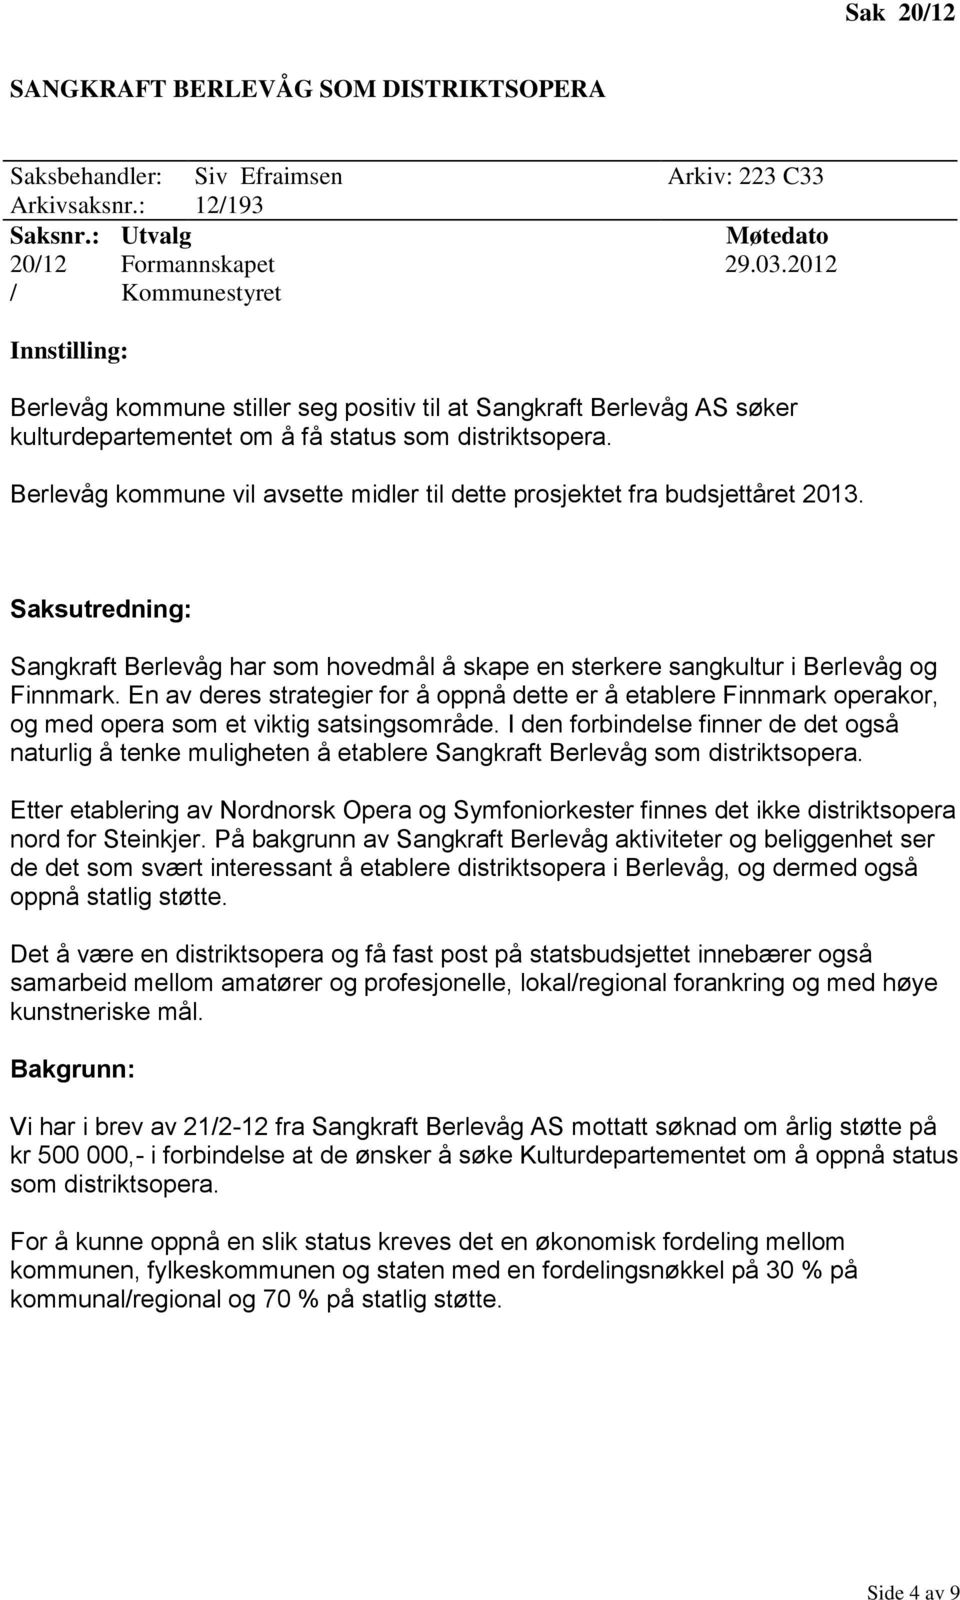 Berlevåg kommune vil avsette midler til dette prosjektet fra budsjettåret 2013. Sangkraft Berlevåg har som hovedmål å skape en sterkere sangkultur i Berlevåg og Finnmark.